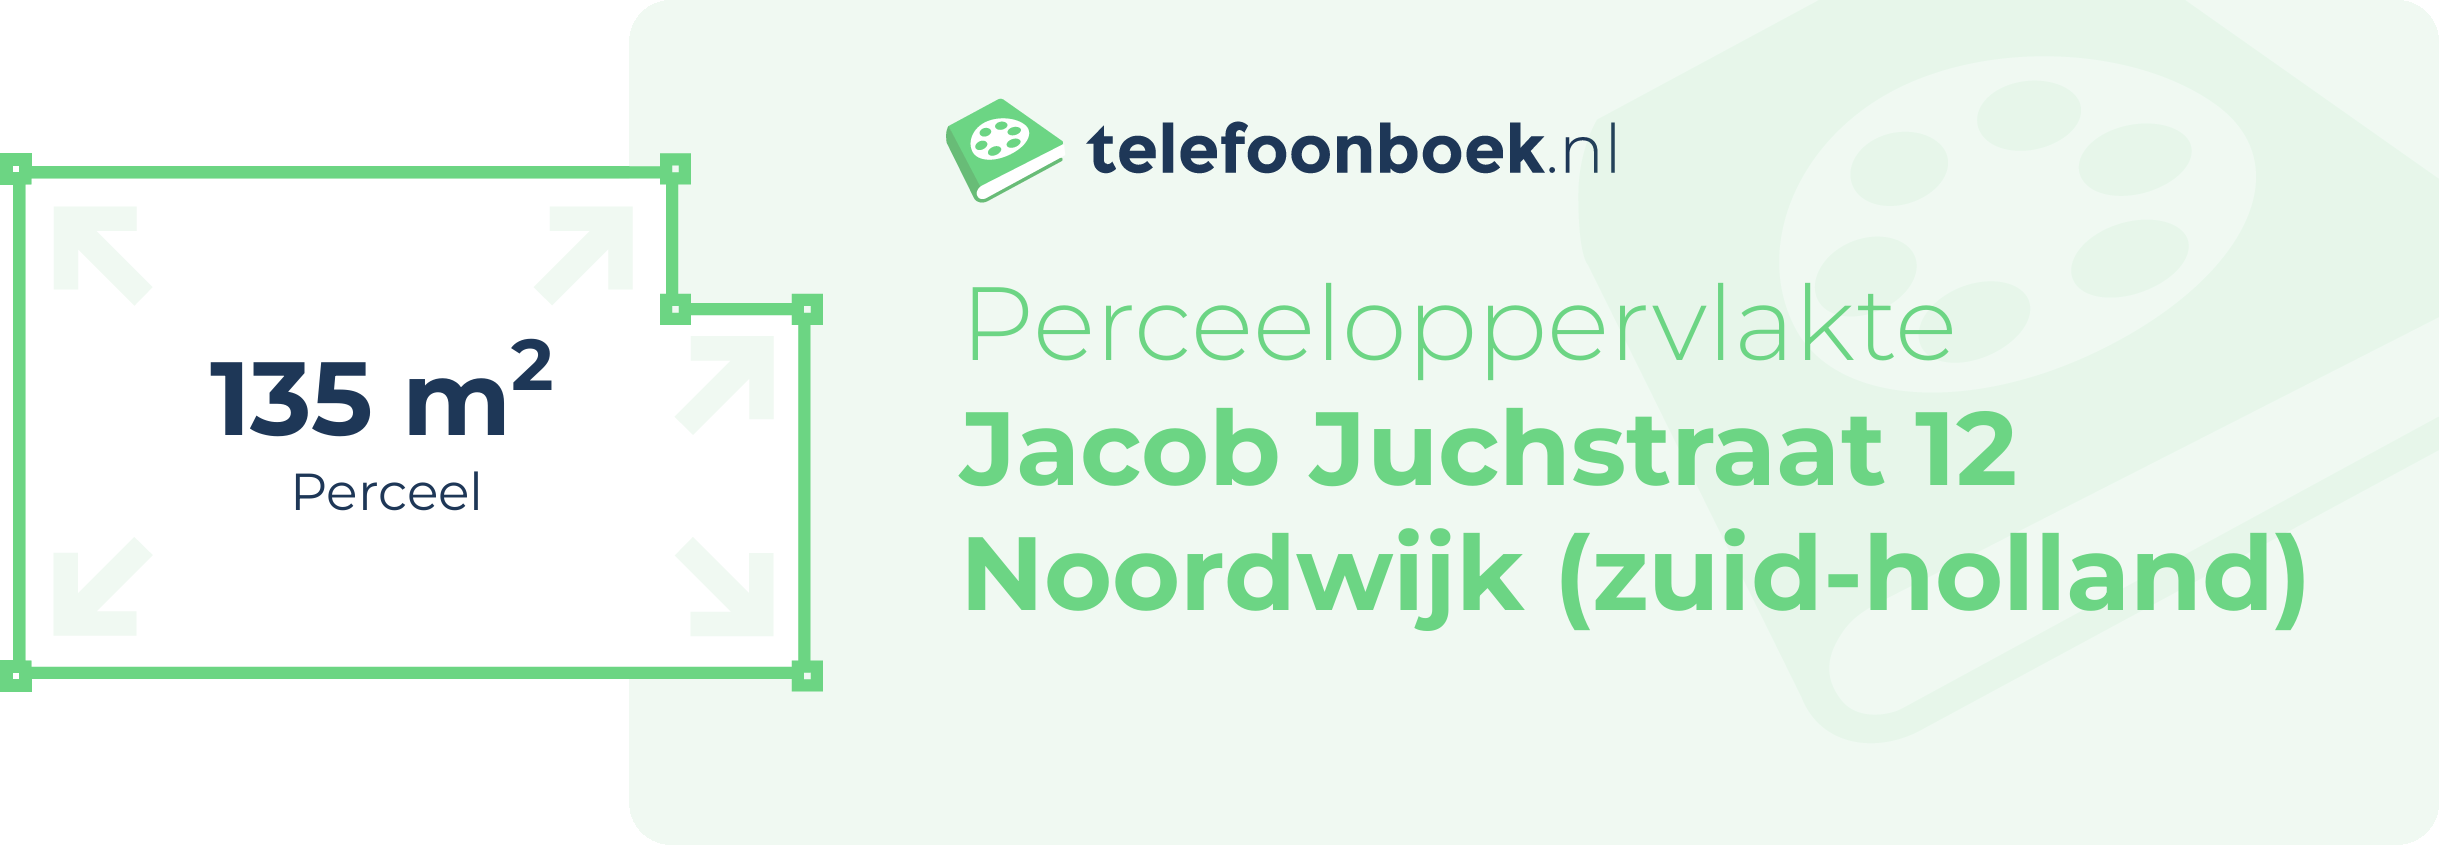 Perceeloppervlakte Jacob Juchstraat 12 Noordwijk (Zuid-Holland)